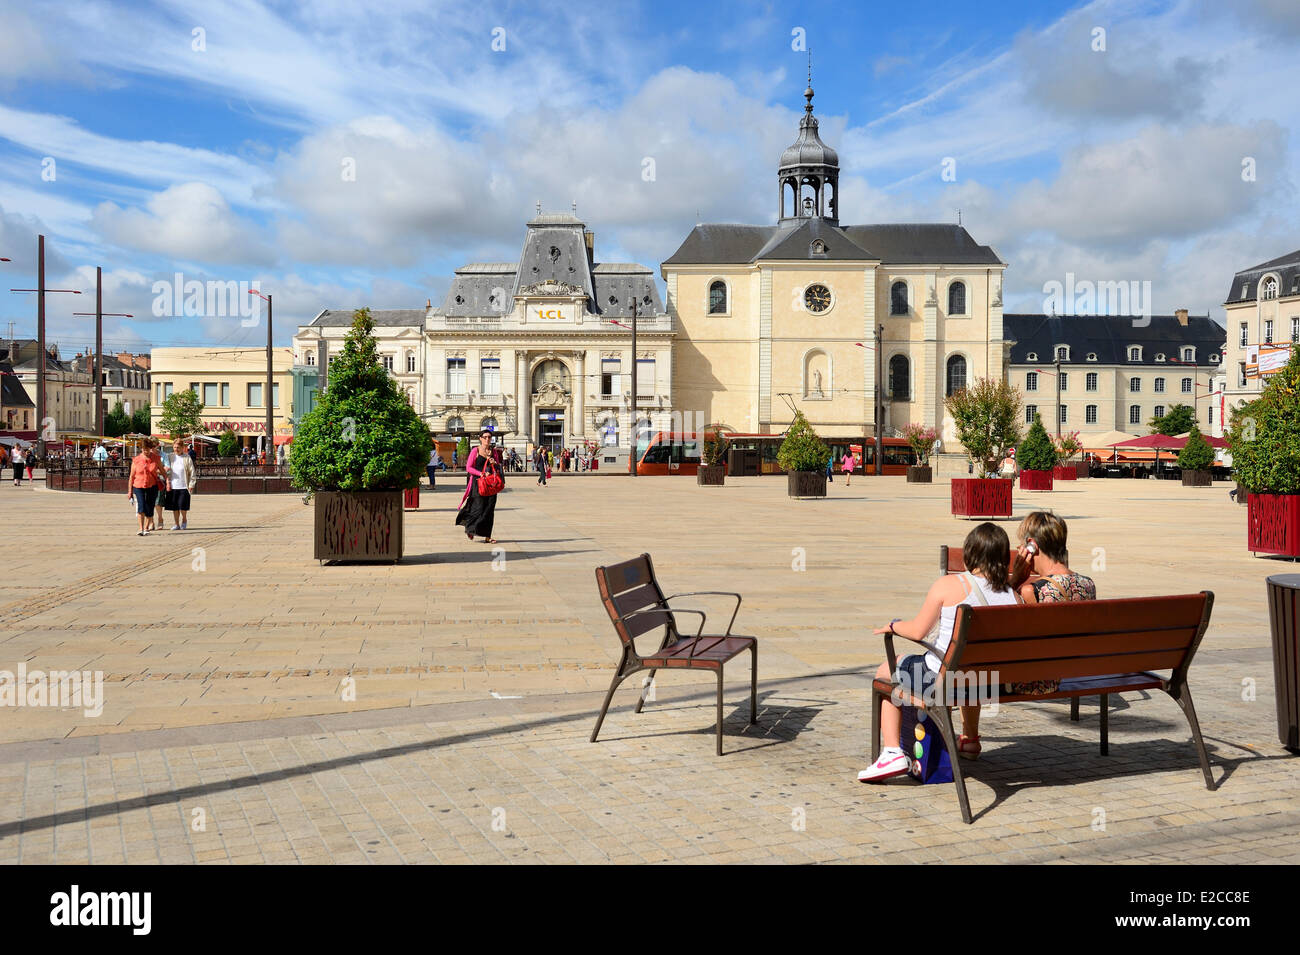 France, Sarthe, Le Mans, Place de la Republique and the Visitation church in the background Stock Photo